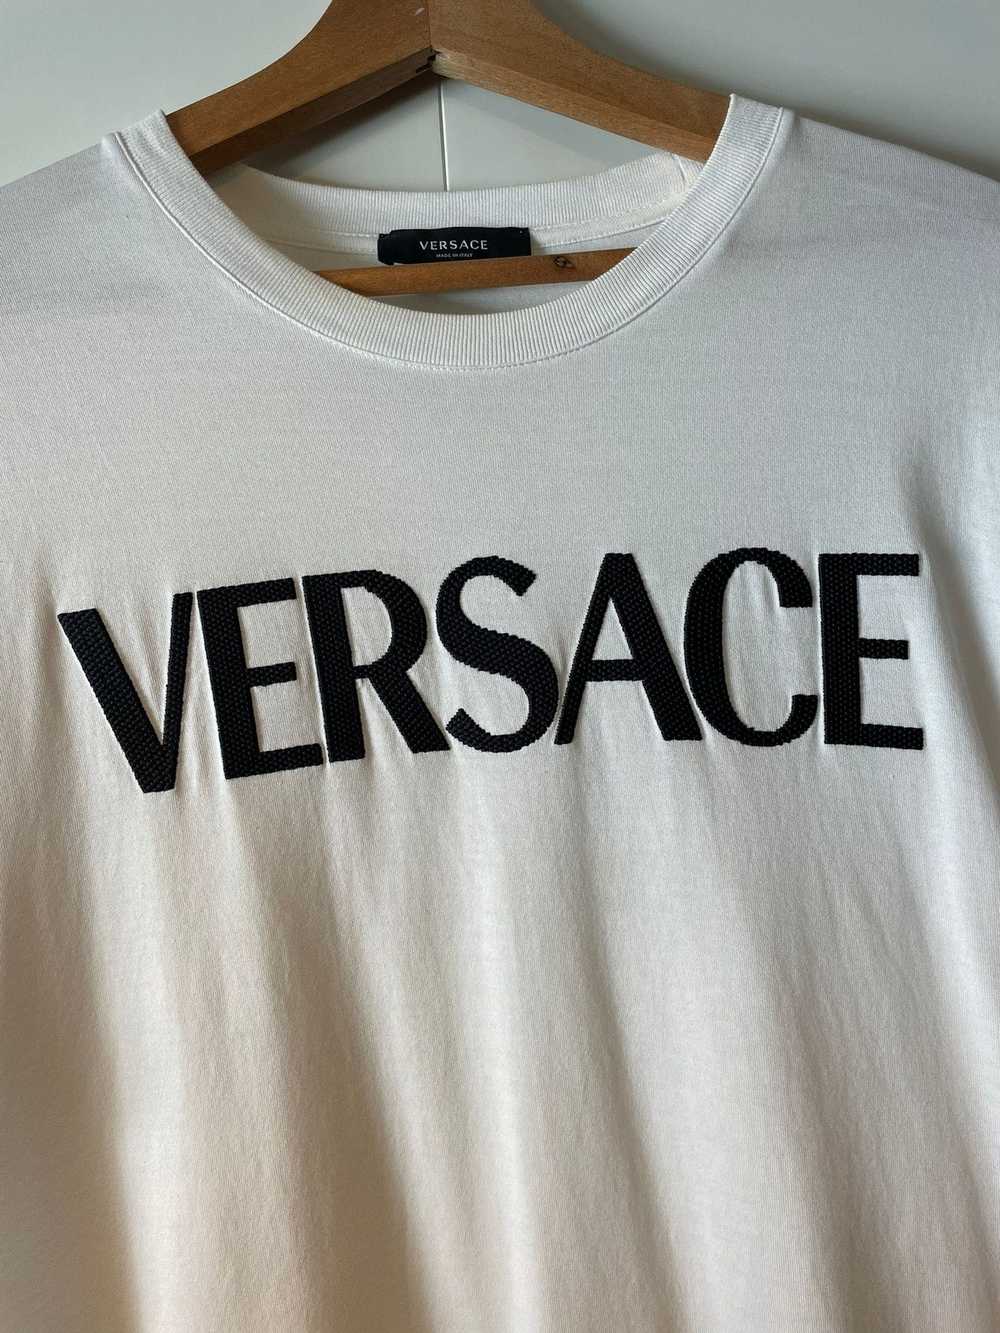 Versace Versace Taylor fit Logo T-shirt size L wh… - image 2